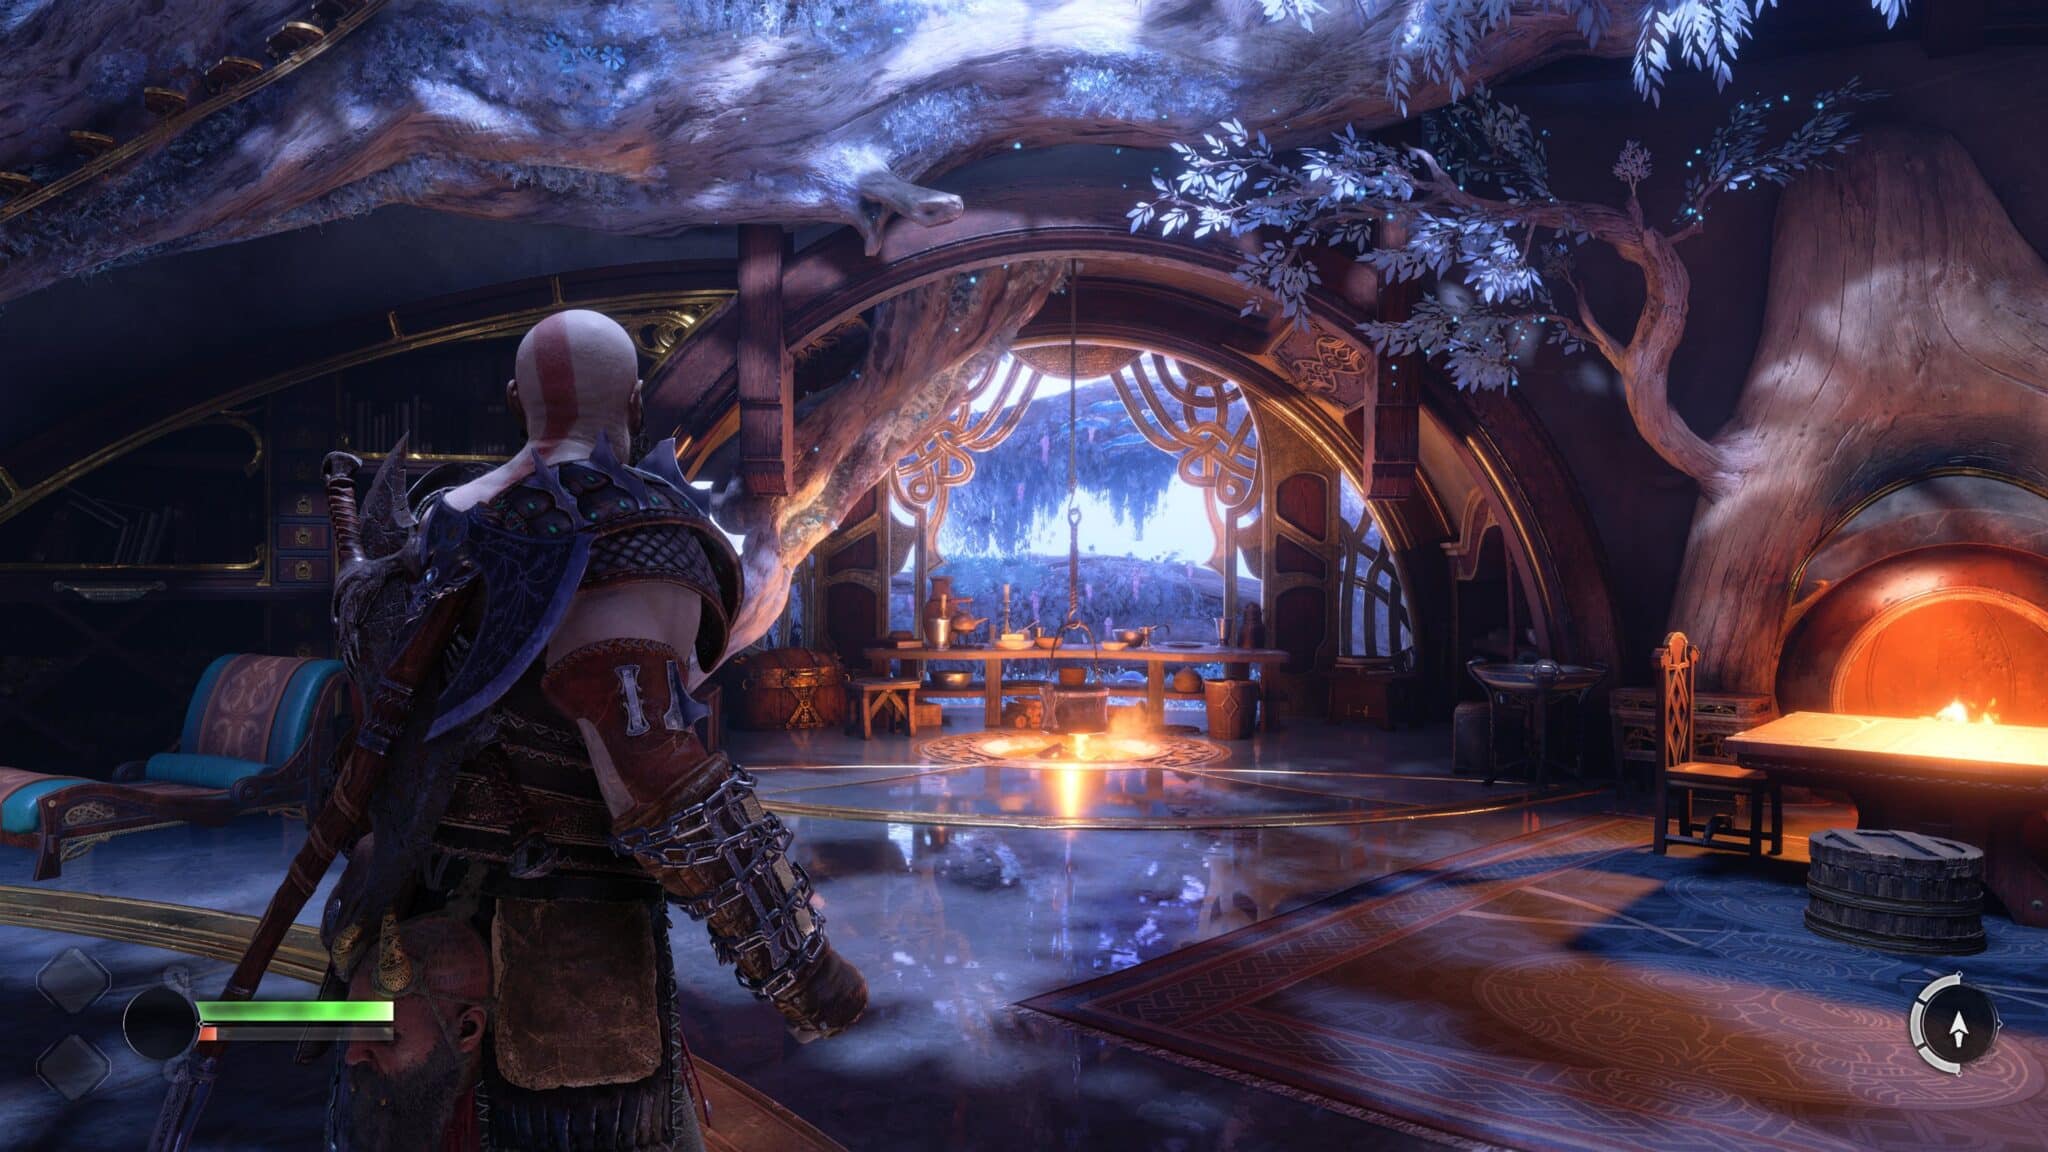 (Entre leurs aventures, Kratos et Atrée se réfugient régulièrement dans la maison de leurs amis nains.)